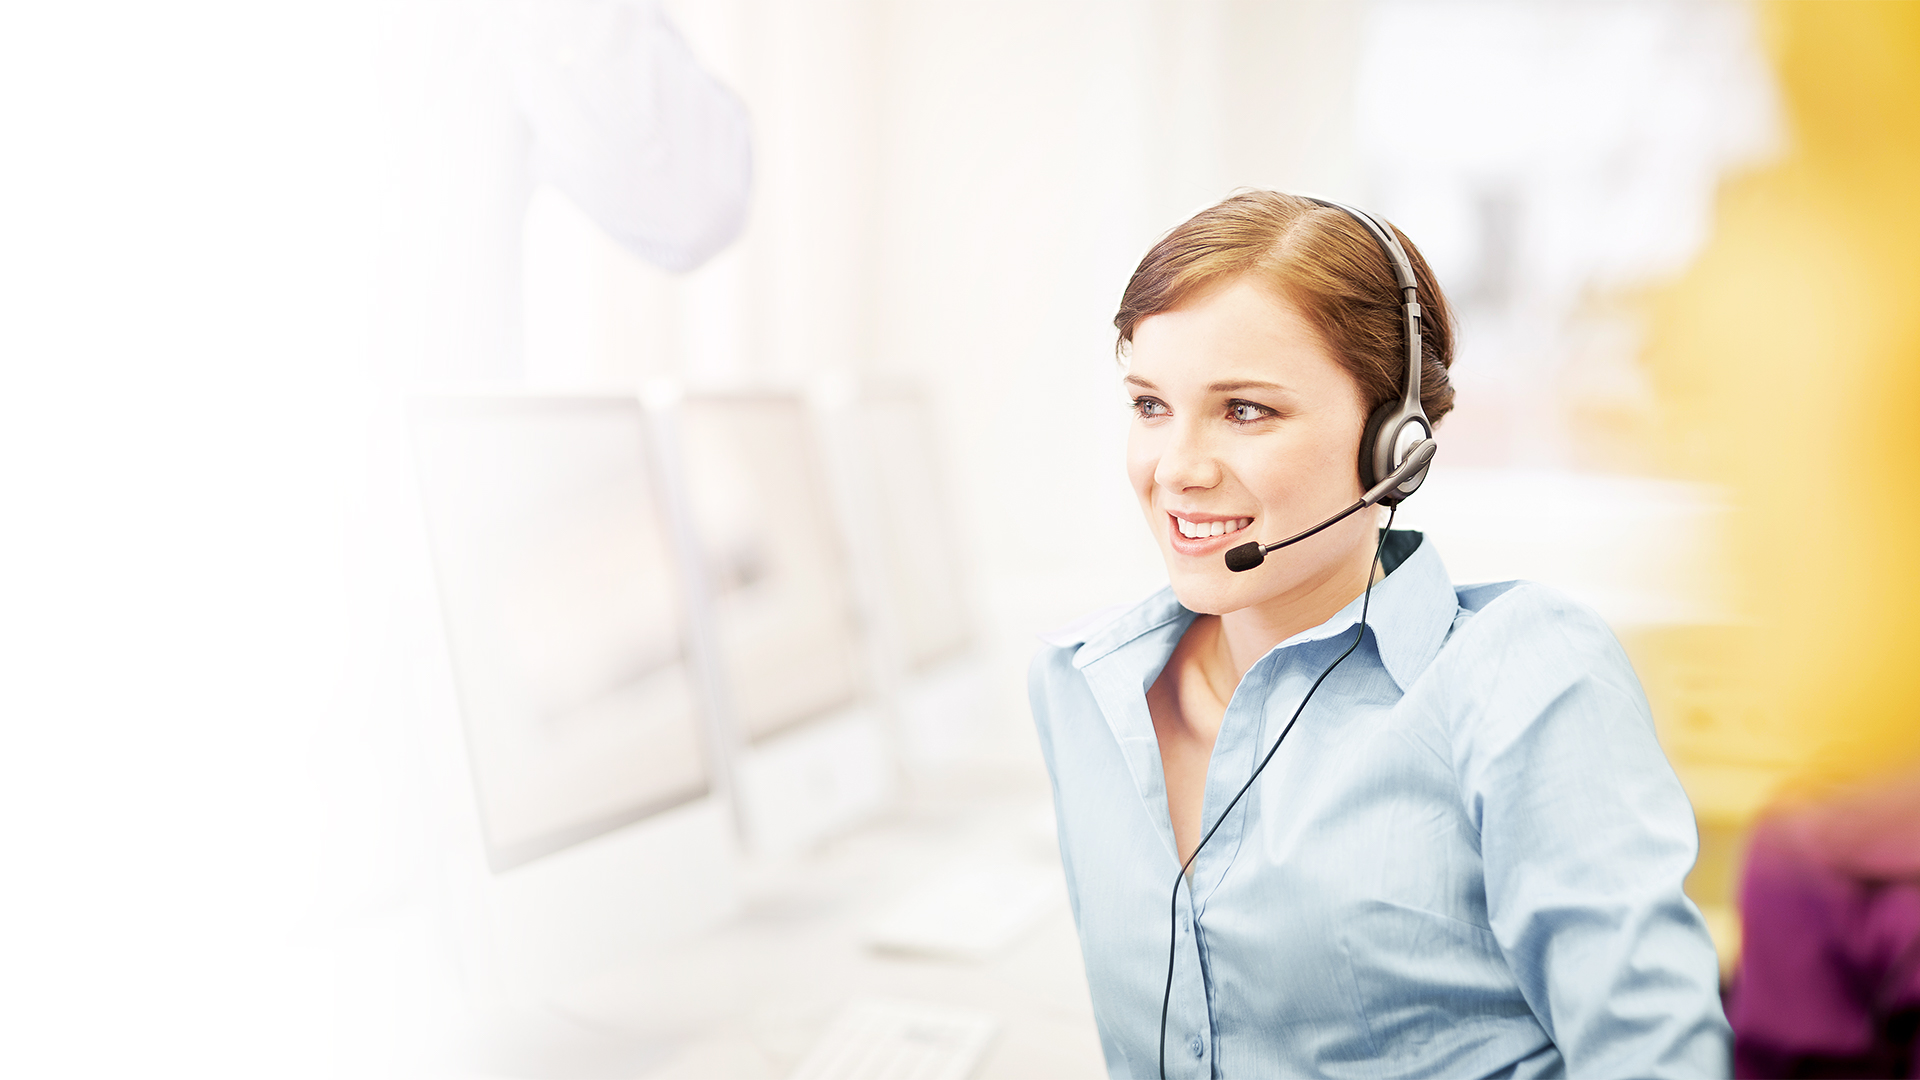 Frau im Callcenter mit Headset am Telefonieren - helle Farben